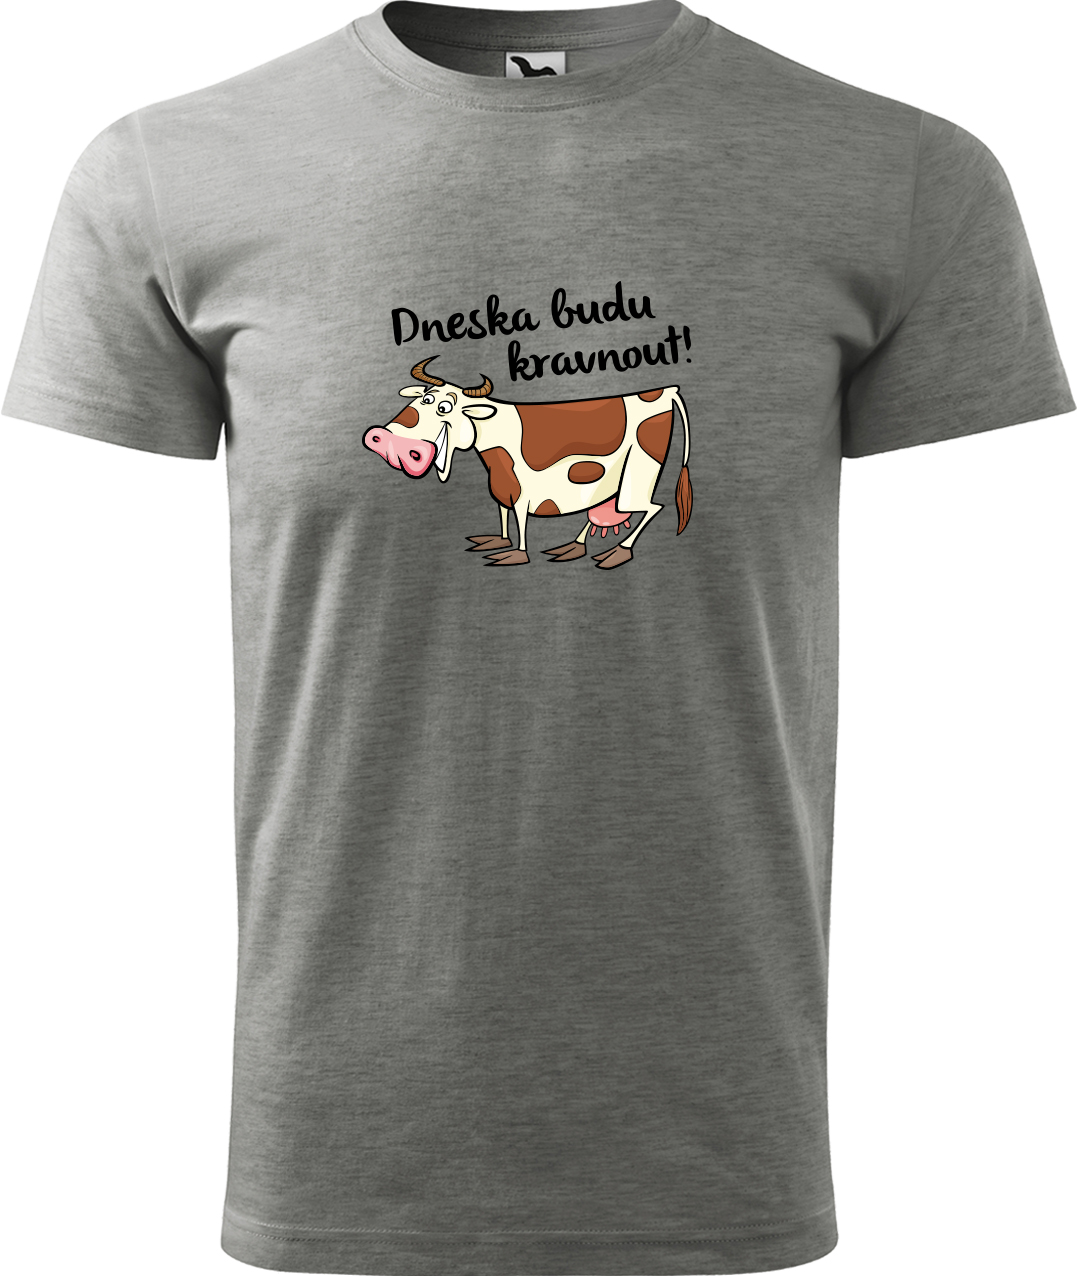 Pánské tričko s krávou - Dneska budu kravnout! Velikost: 2XL, Barva: Tmavě šedý melír (12), Střih: pánský